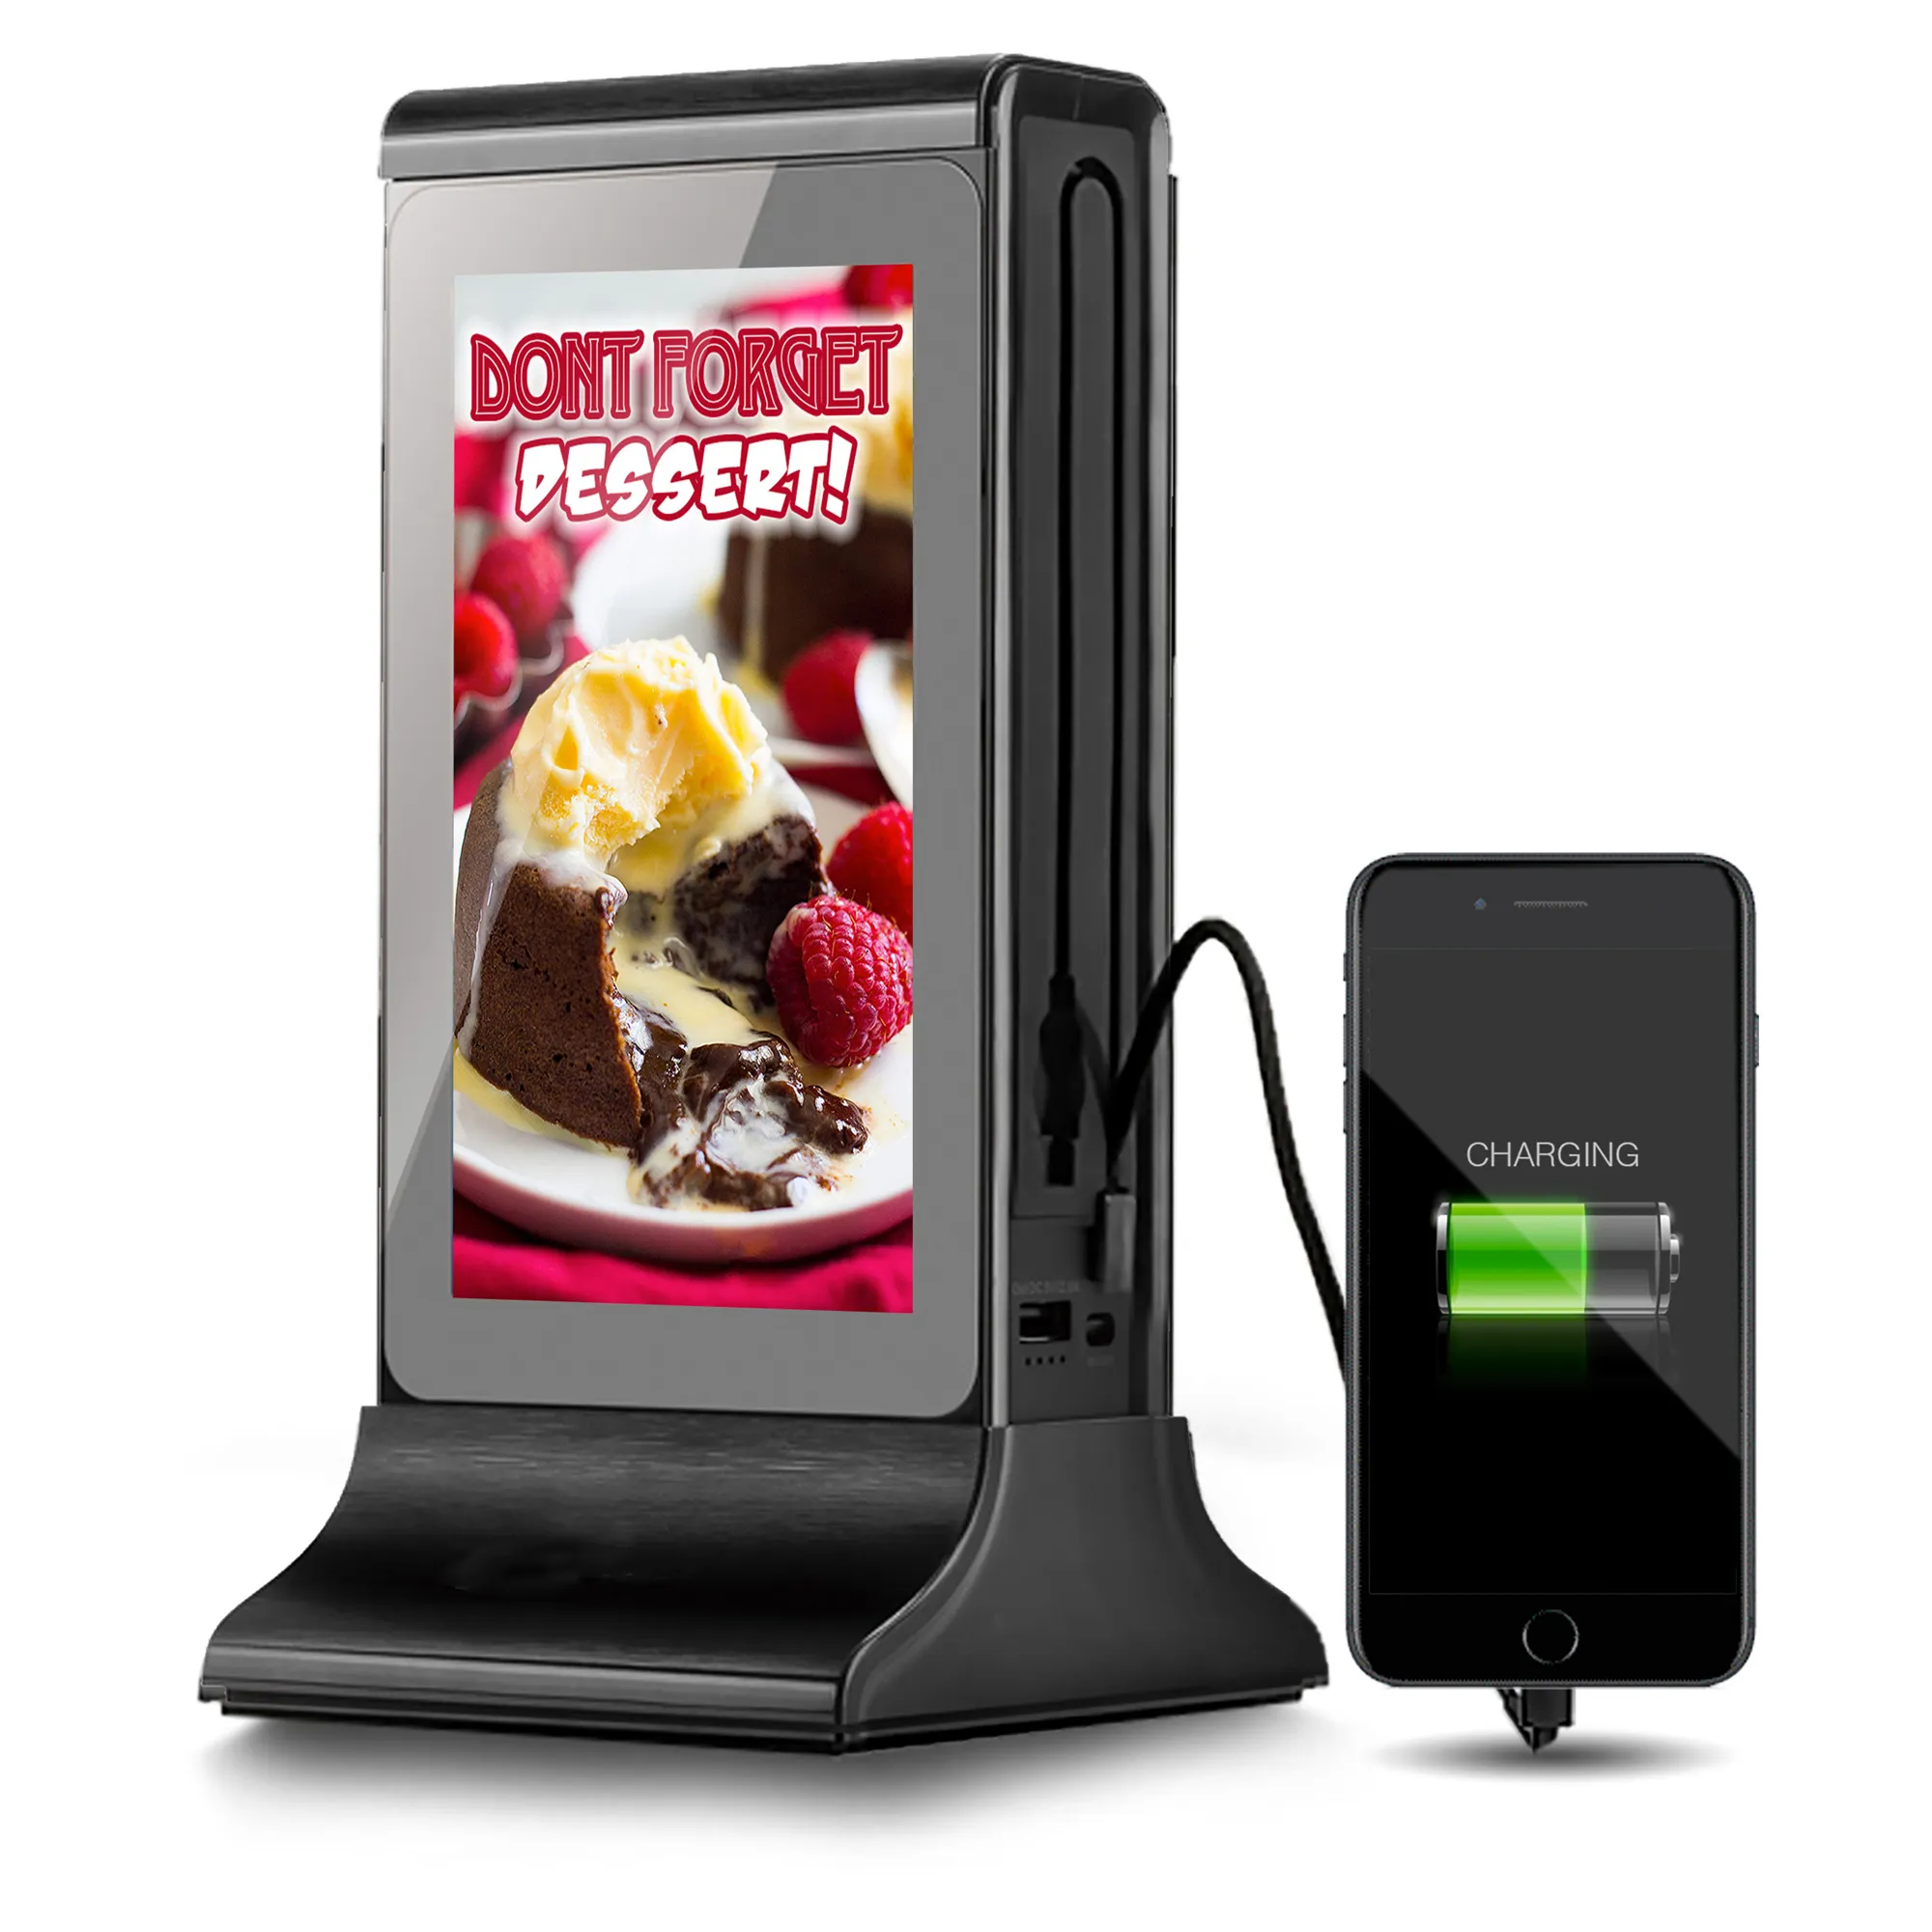 FYD 835SD attrezzatura per la ristorazione più venduta dual media ad stand schermi ristorante tavolo lettore digitale menu display pubblicitario